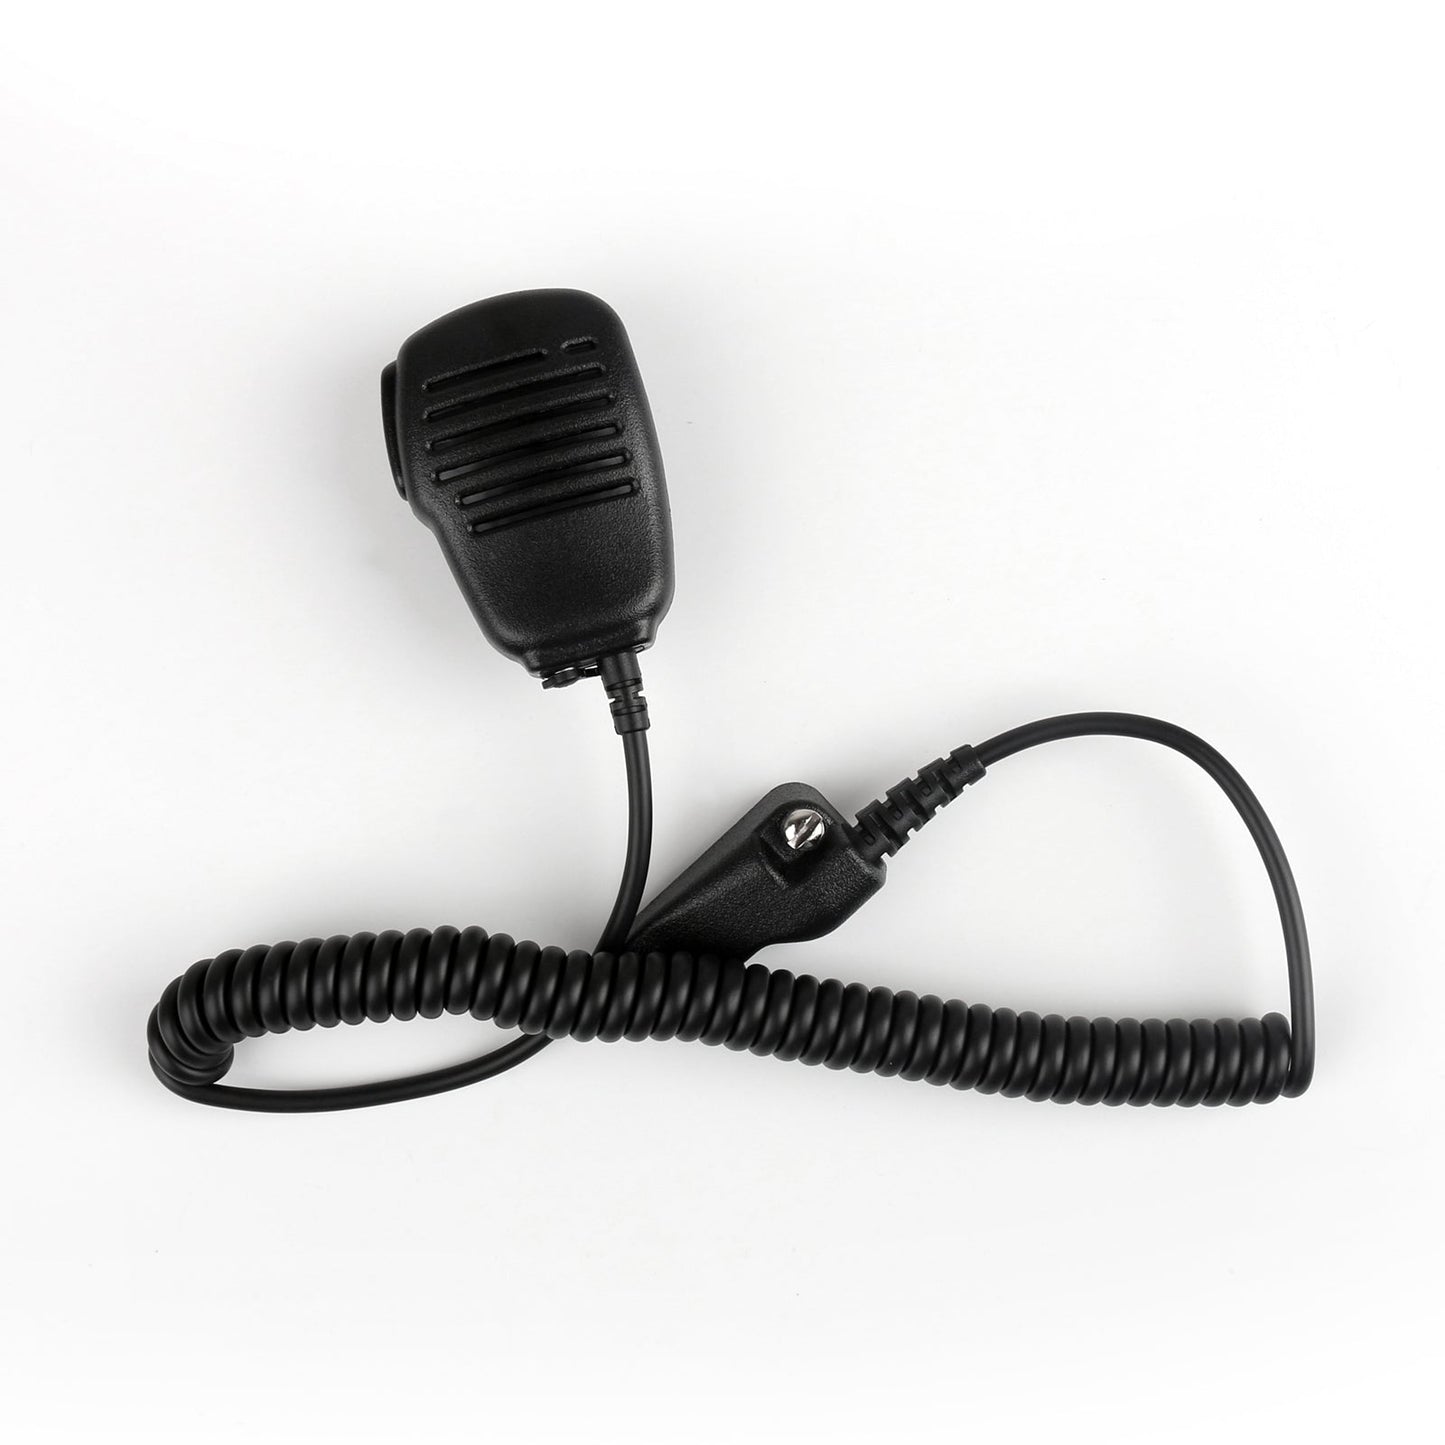 1x Waterproof Handheld Speaker Microphone For KENWOOD TK-2140/480/3140/380/285